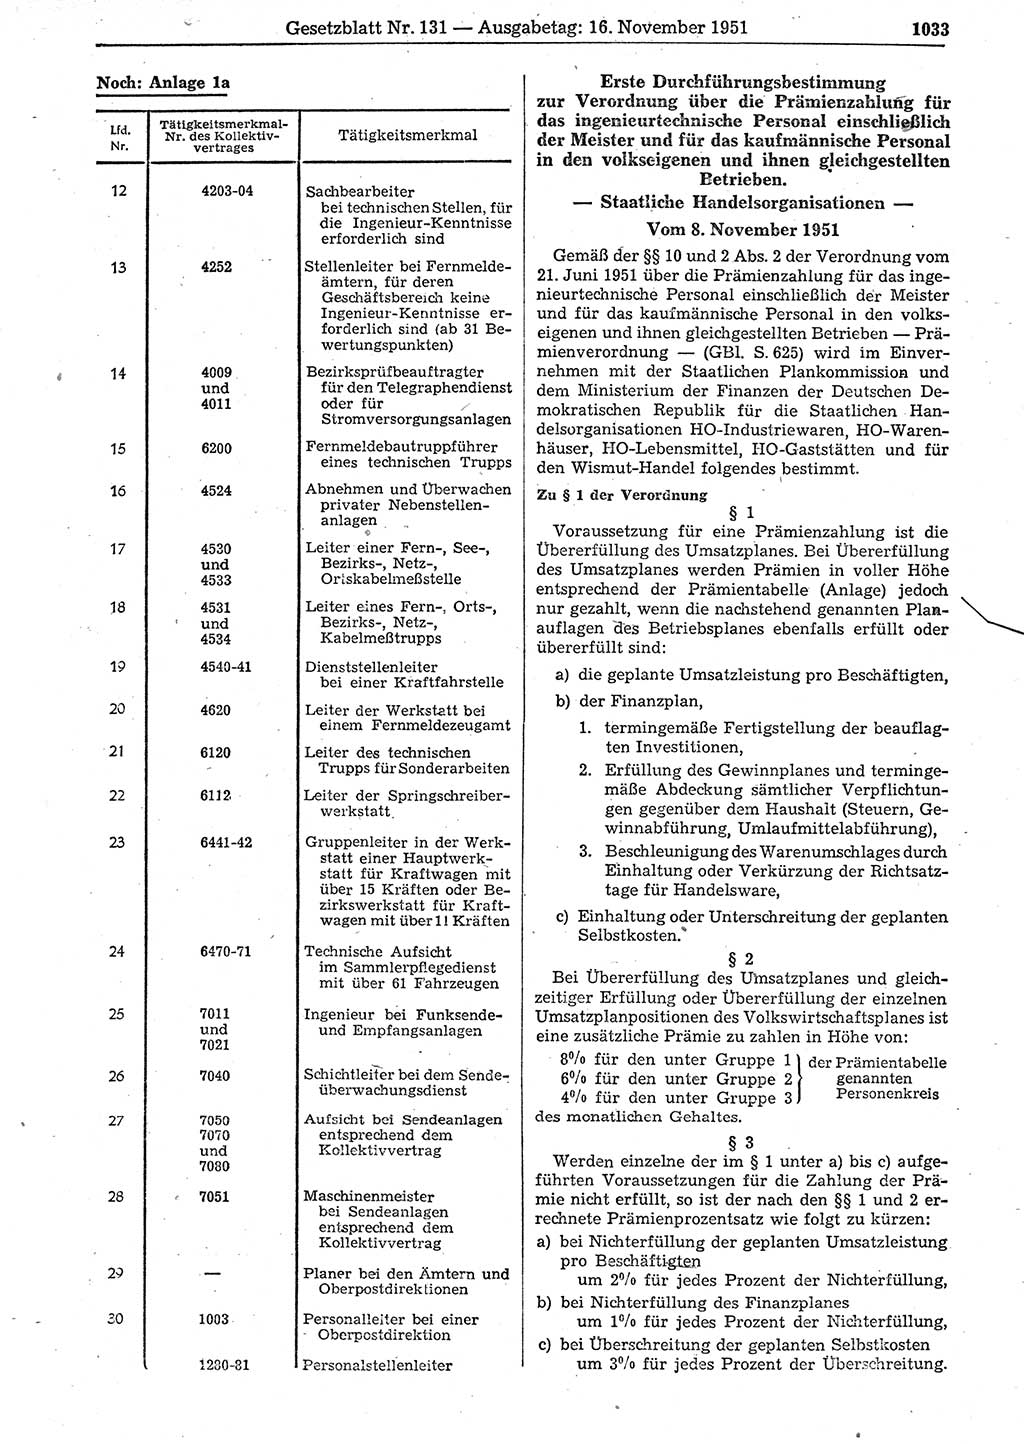 Gesetzblatt (GBl.) der Deutschen Demokratischen Republik (DDR) 1951, Seite 1033 (GBl. DDR 1951, S. 1033)